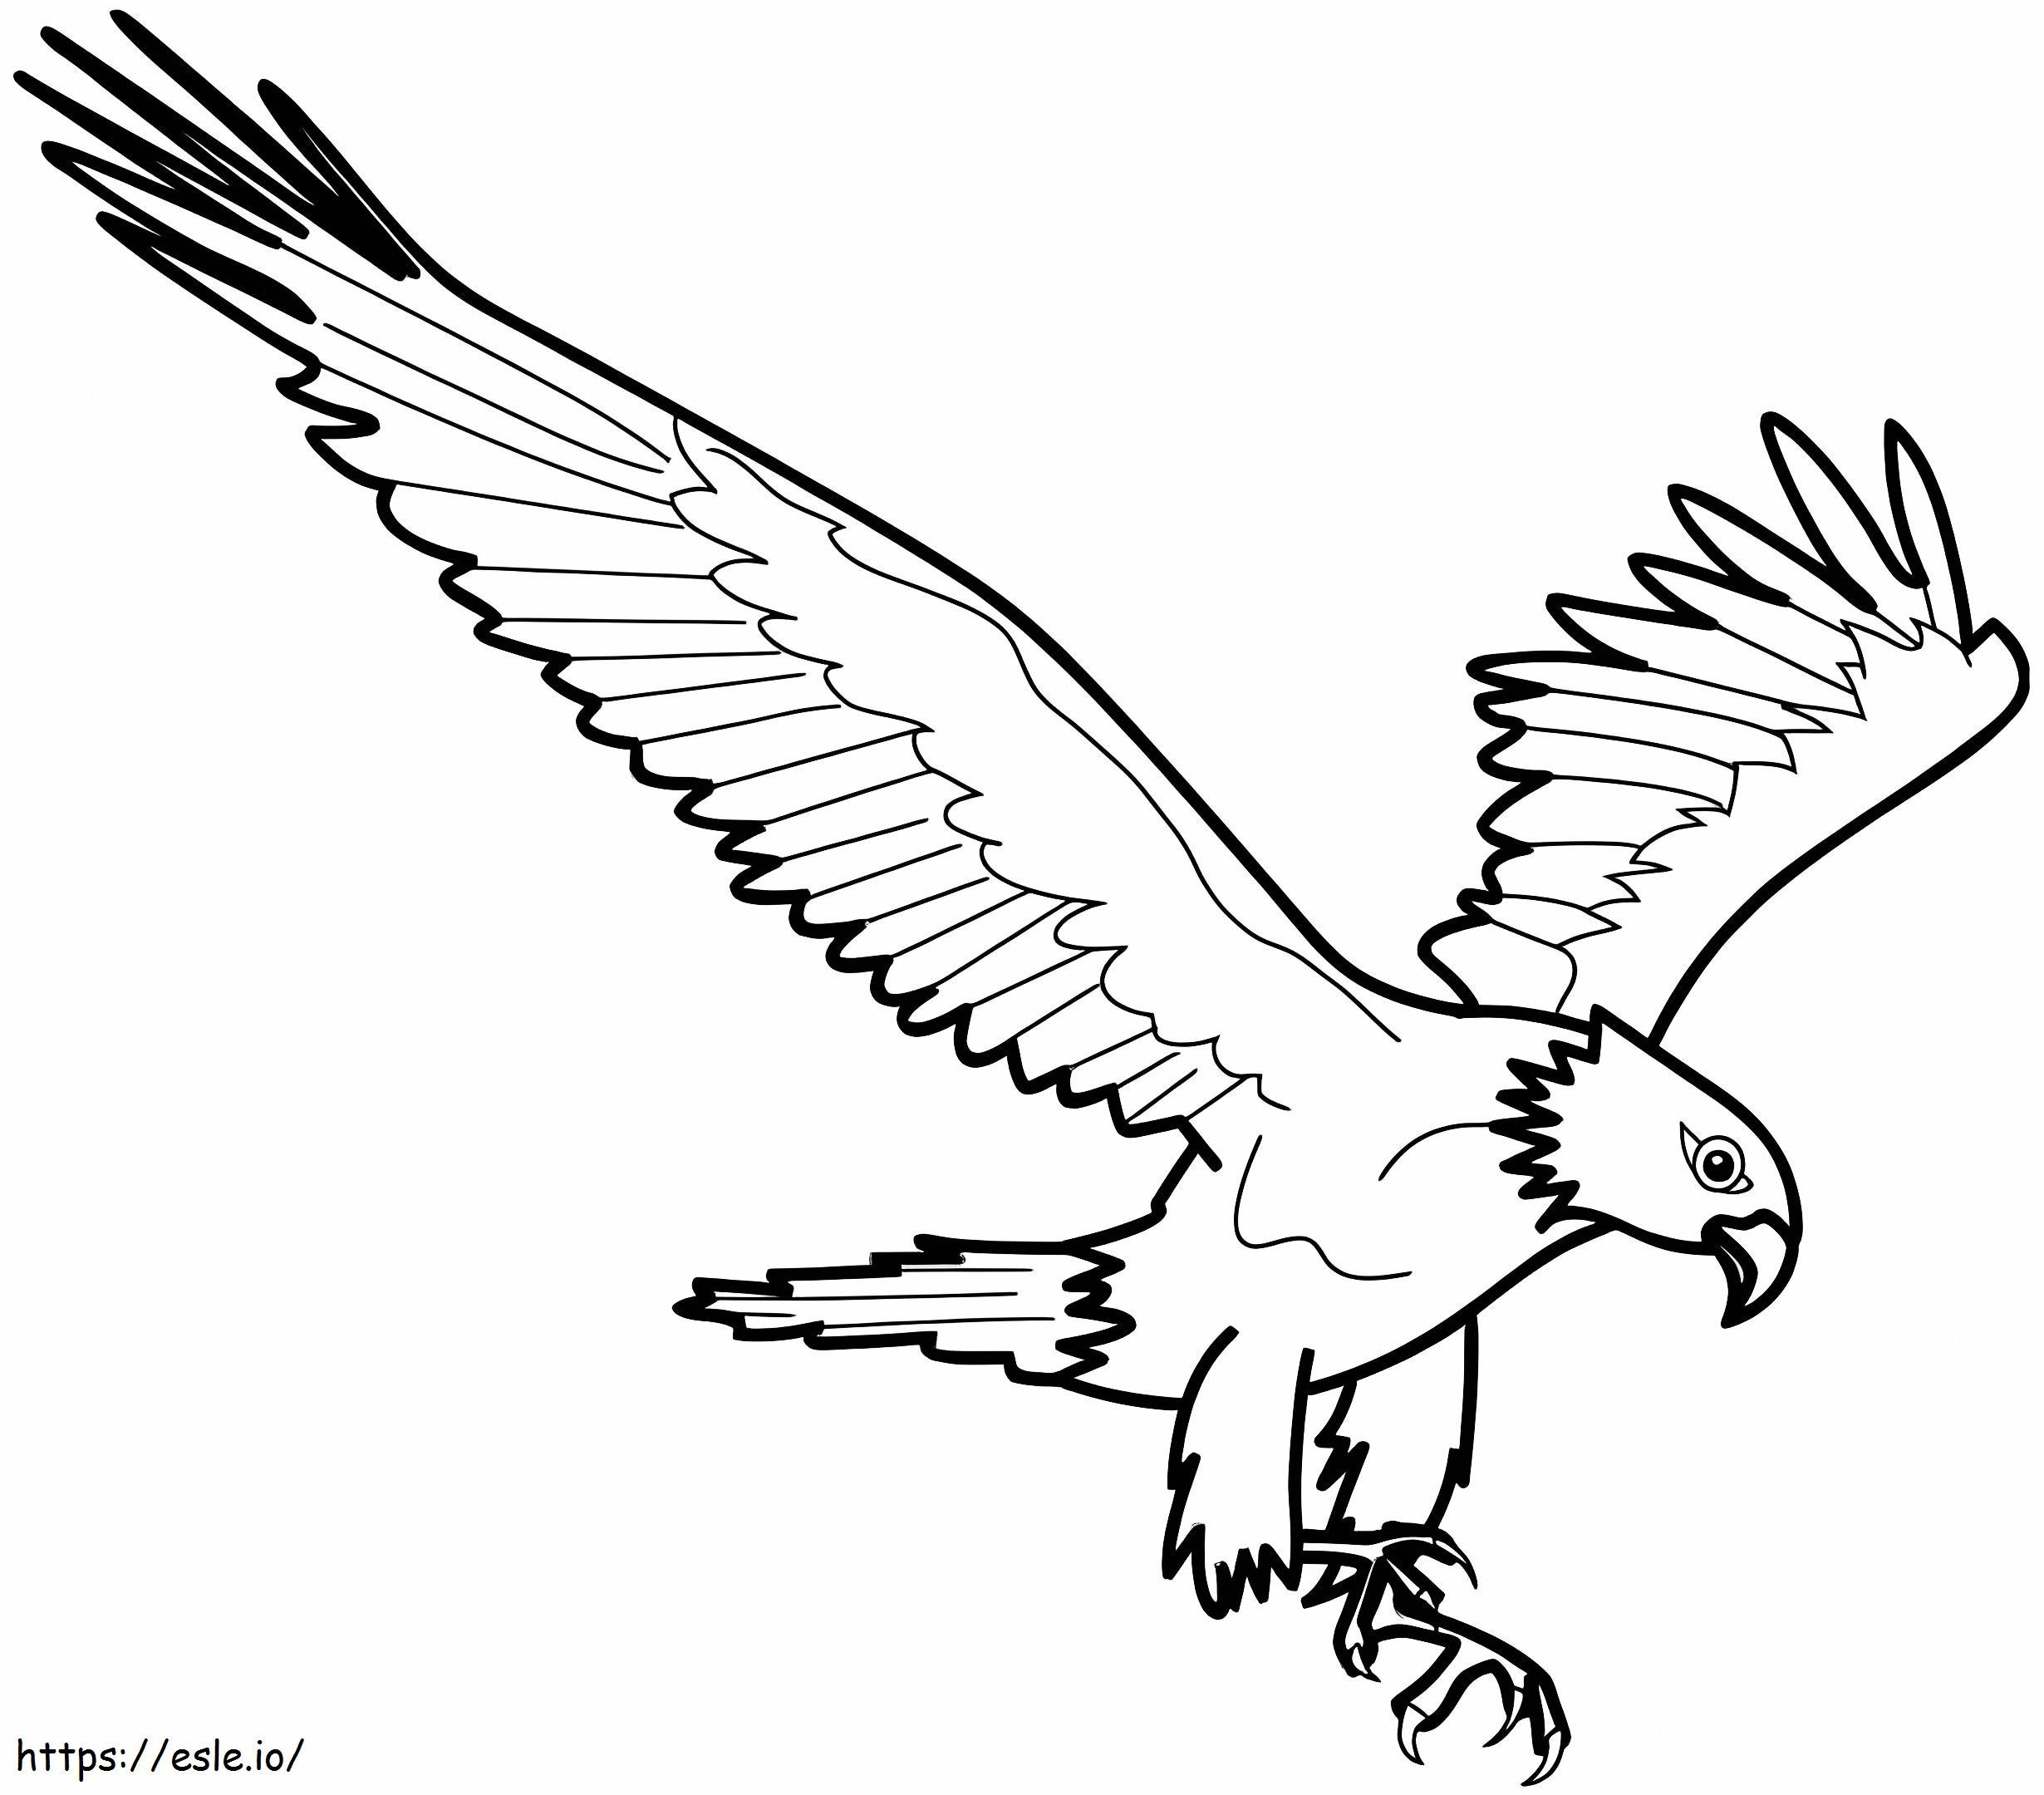 Normaler Adler ausmalbilder